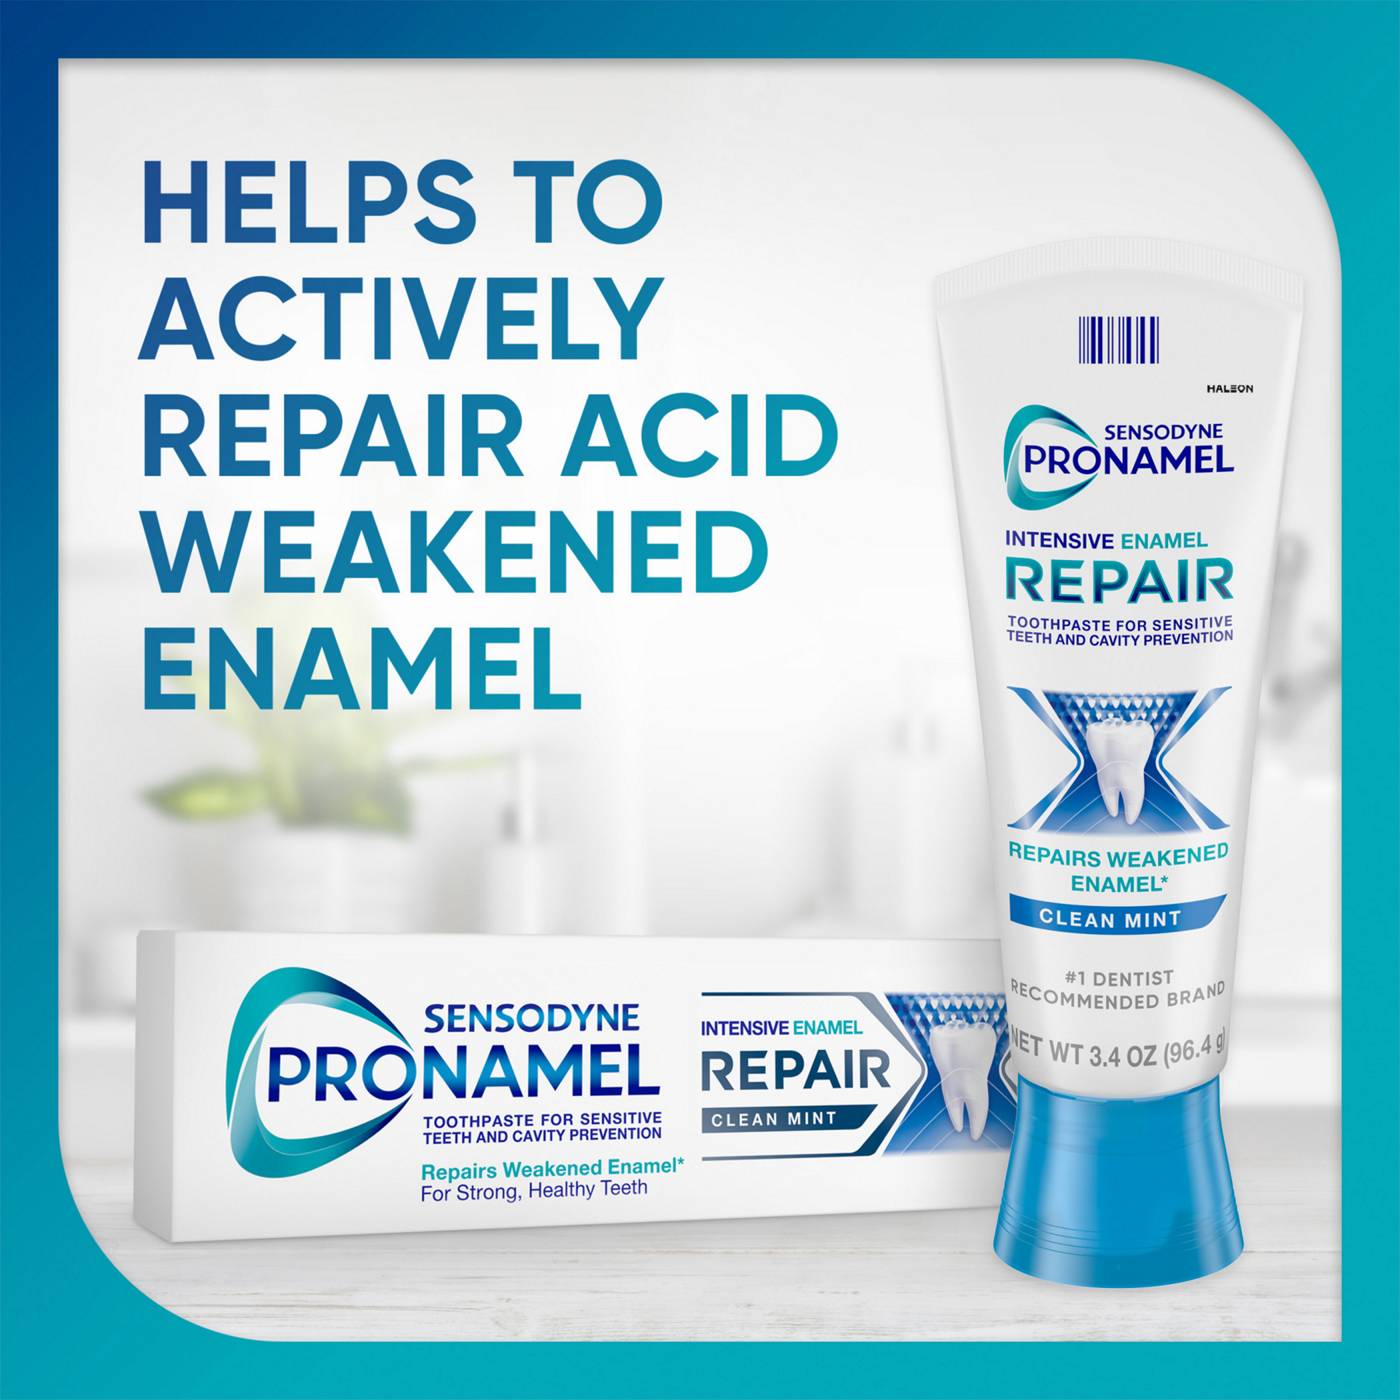 Sensodyne Pronamel Intensive Enamel Repair Toothpaste - Clean Mint; image 6 of 8